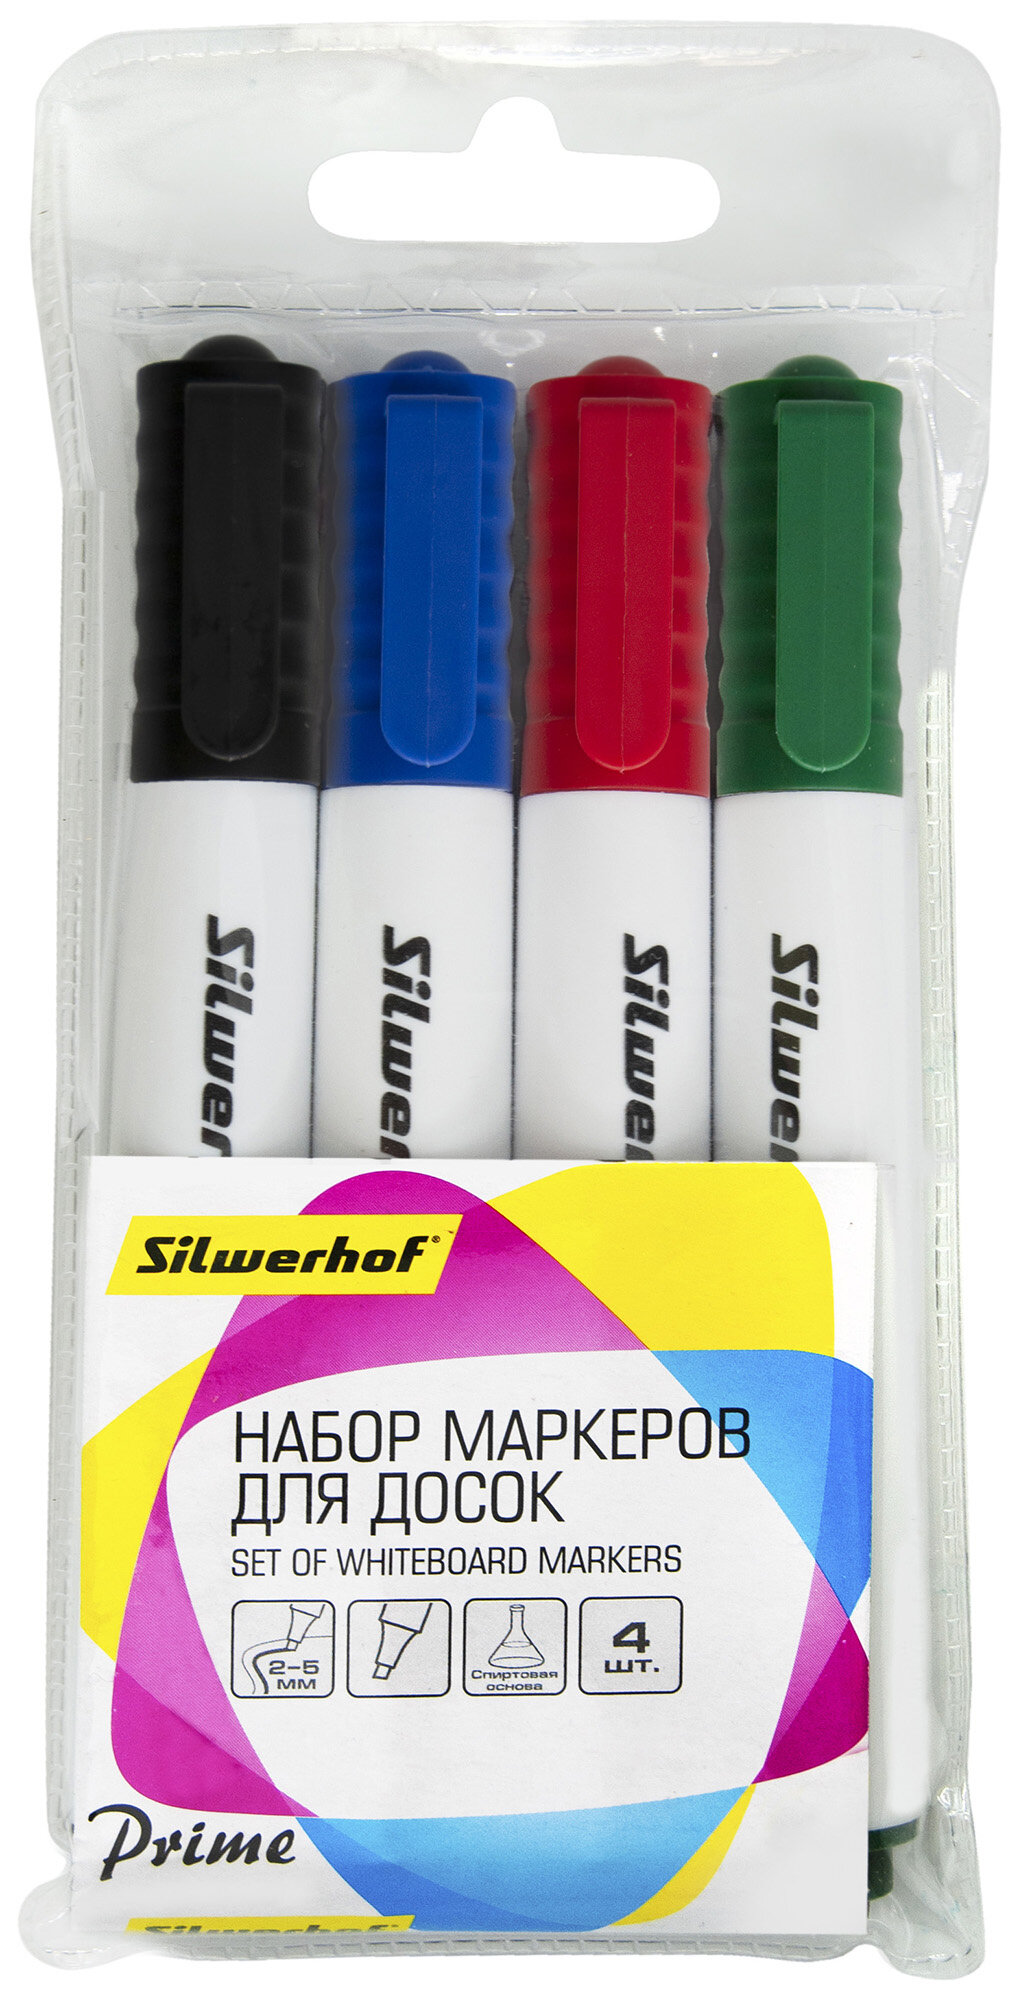 Упаковка маркеров для досок Silwerhof Prime+, 4 цвет., скошенный пишущий наконечник 12 шт./кор. - фото №3